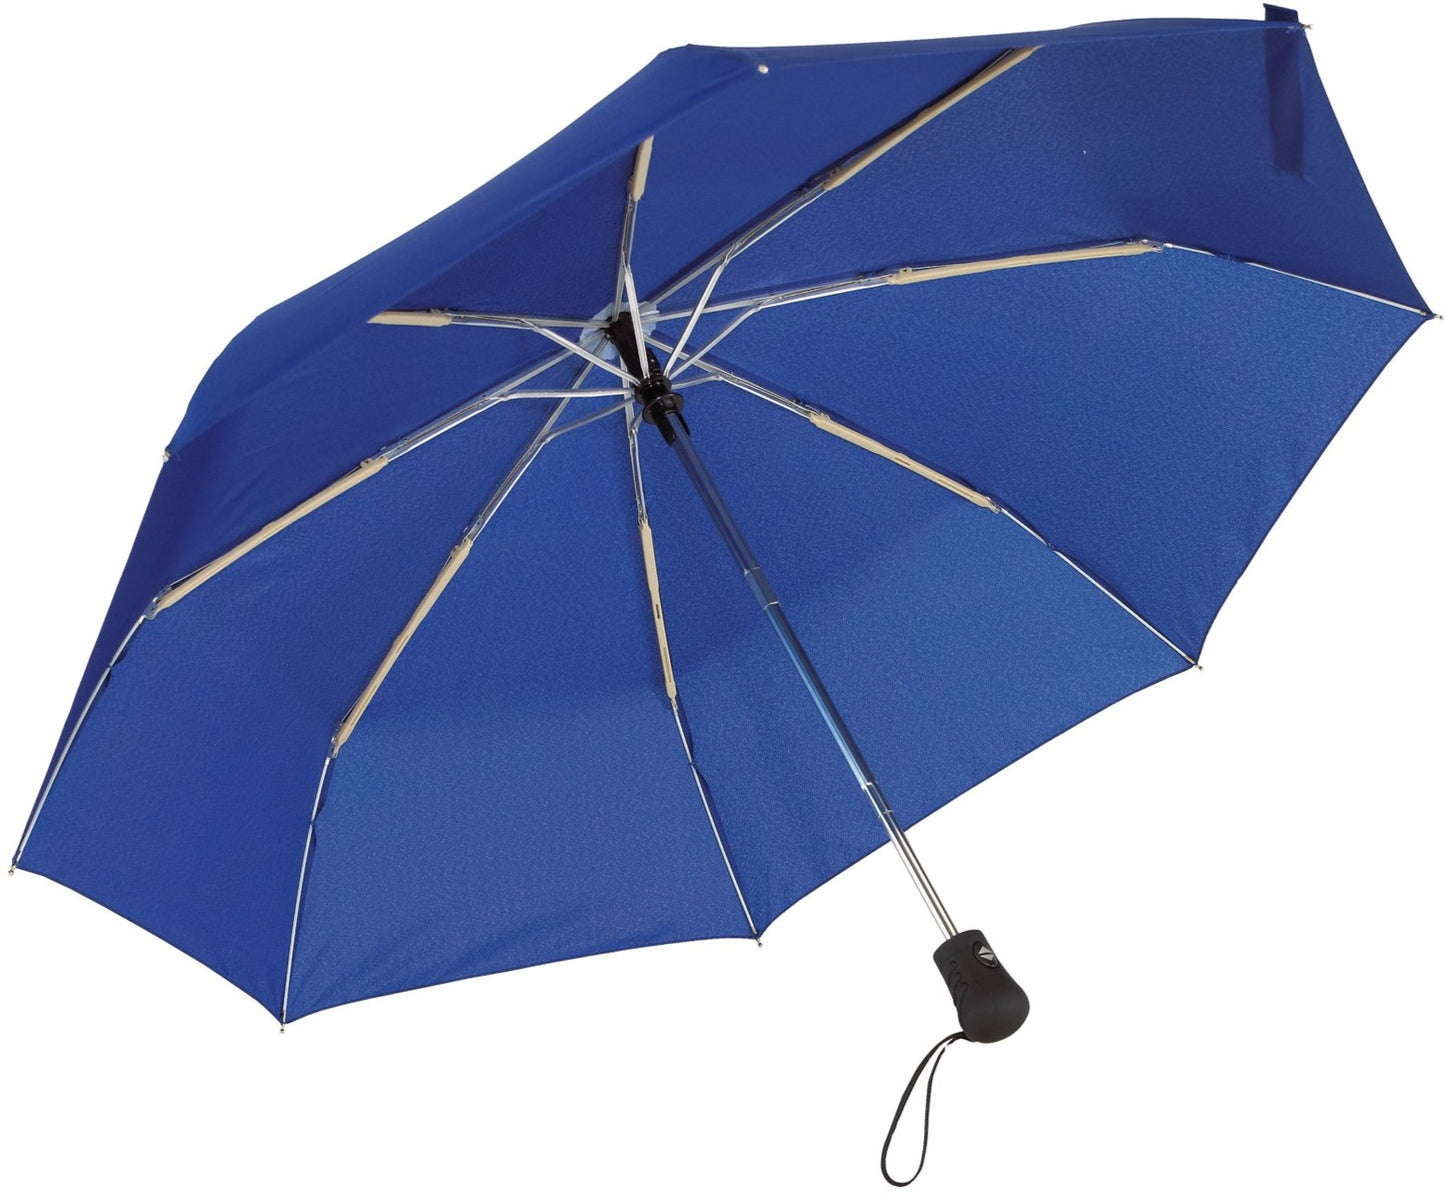 Μπλε Ρουά Ομπρέλα βροχής, μίνι, Αντιανεμική και Twinmatic (κωδικός 01-01-0200).